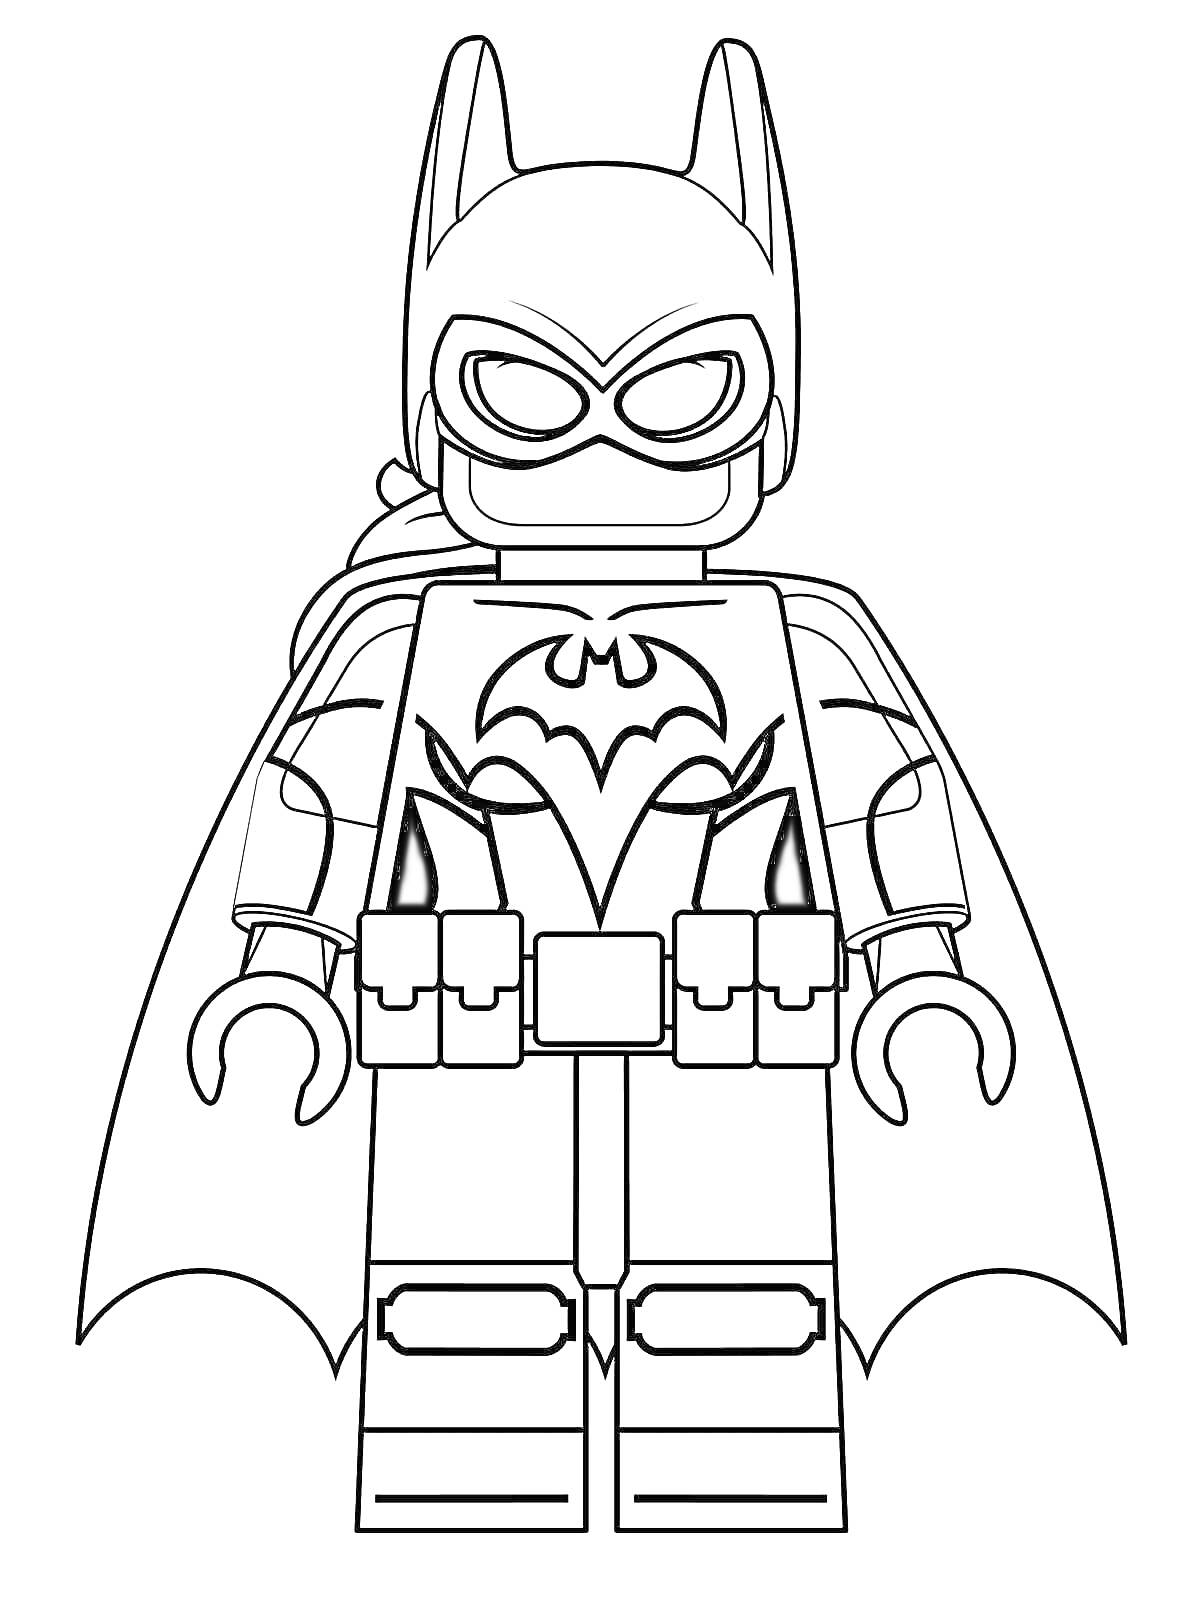 Раскраска Лего Бэтмен в маске и плаще с поясом, стоящий в полный рост